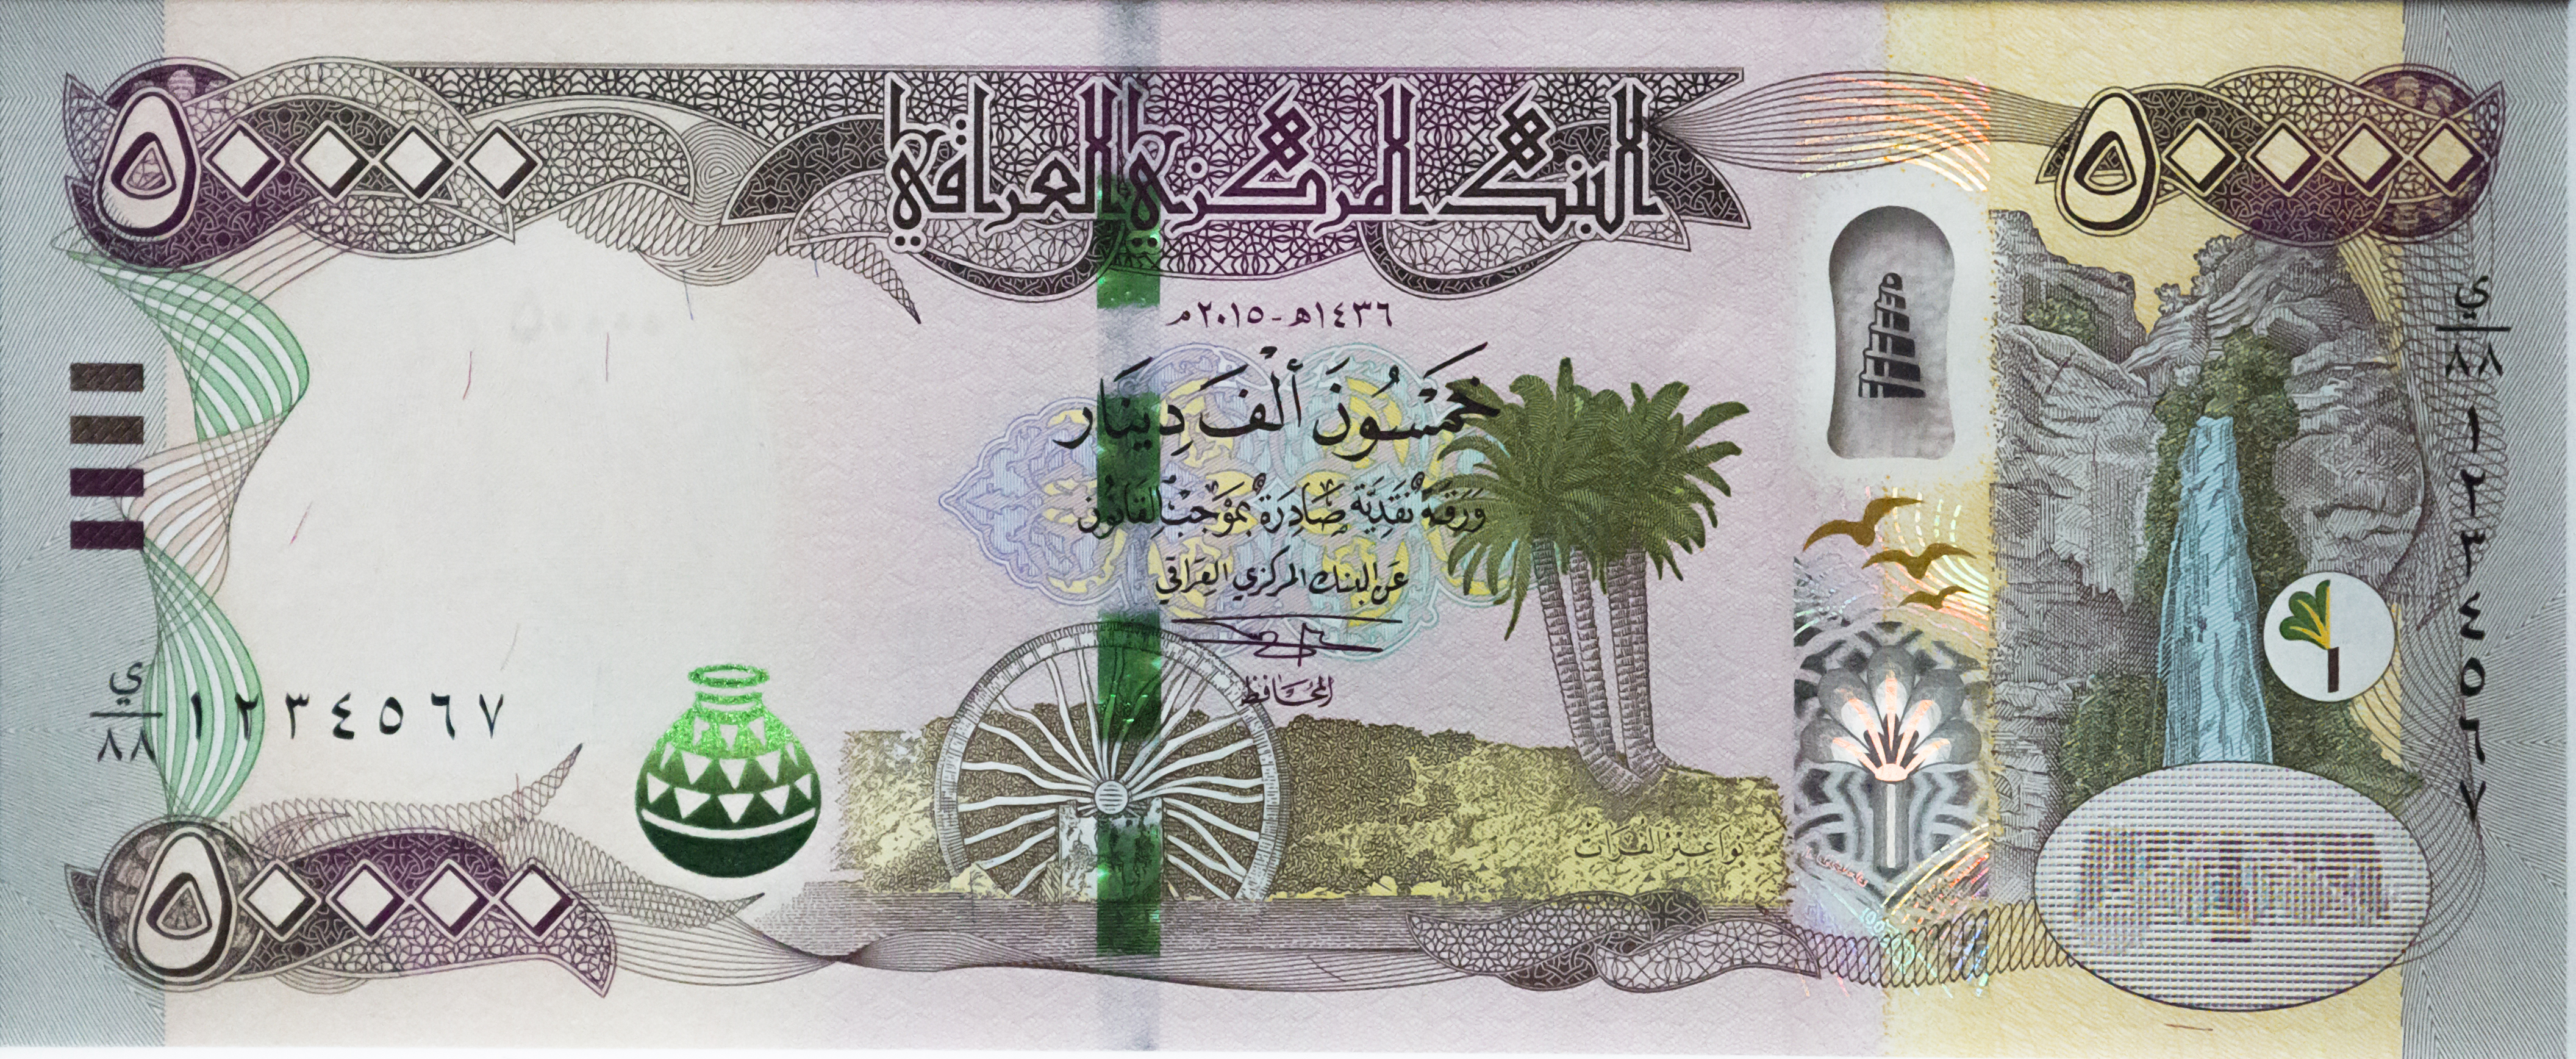 كم هي كلفة طبع العملات العراقية الجديدة؟